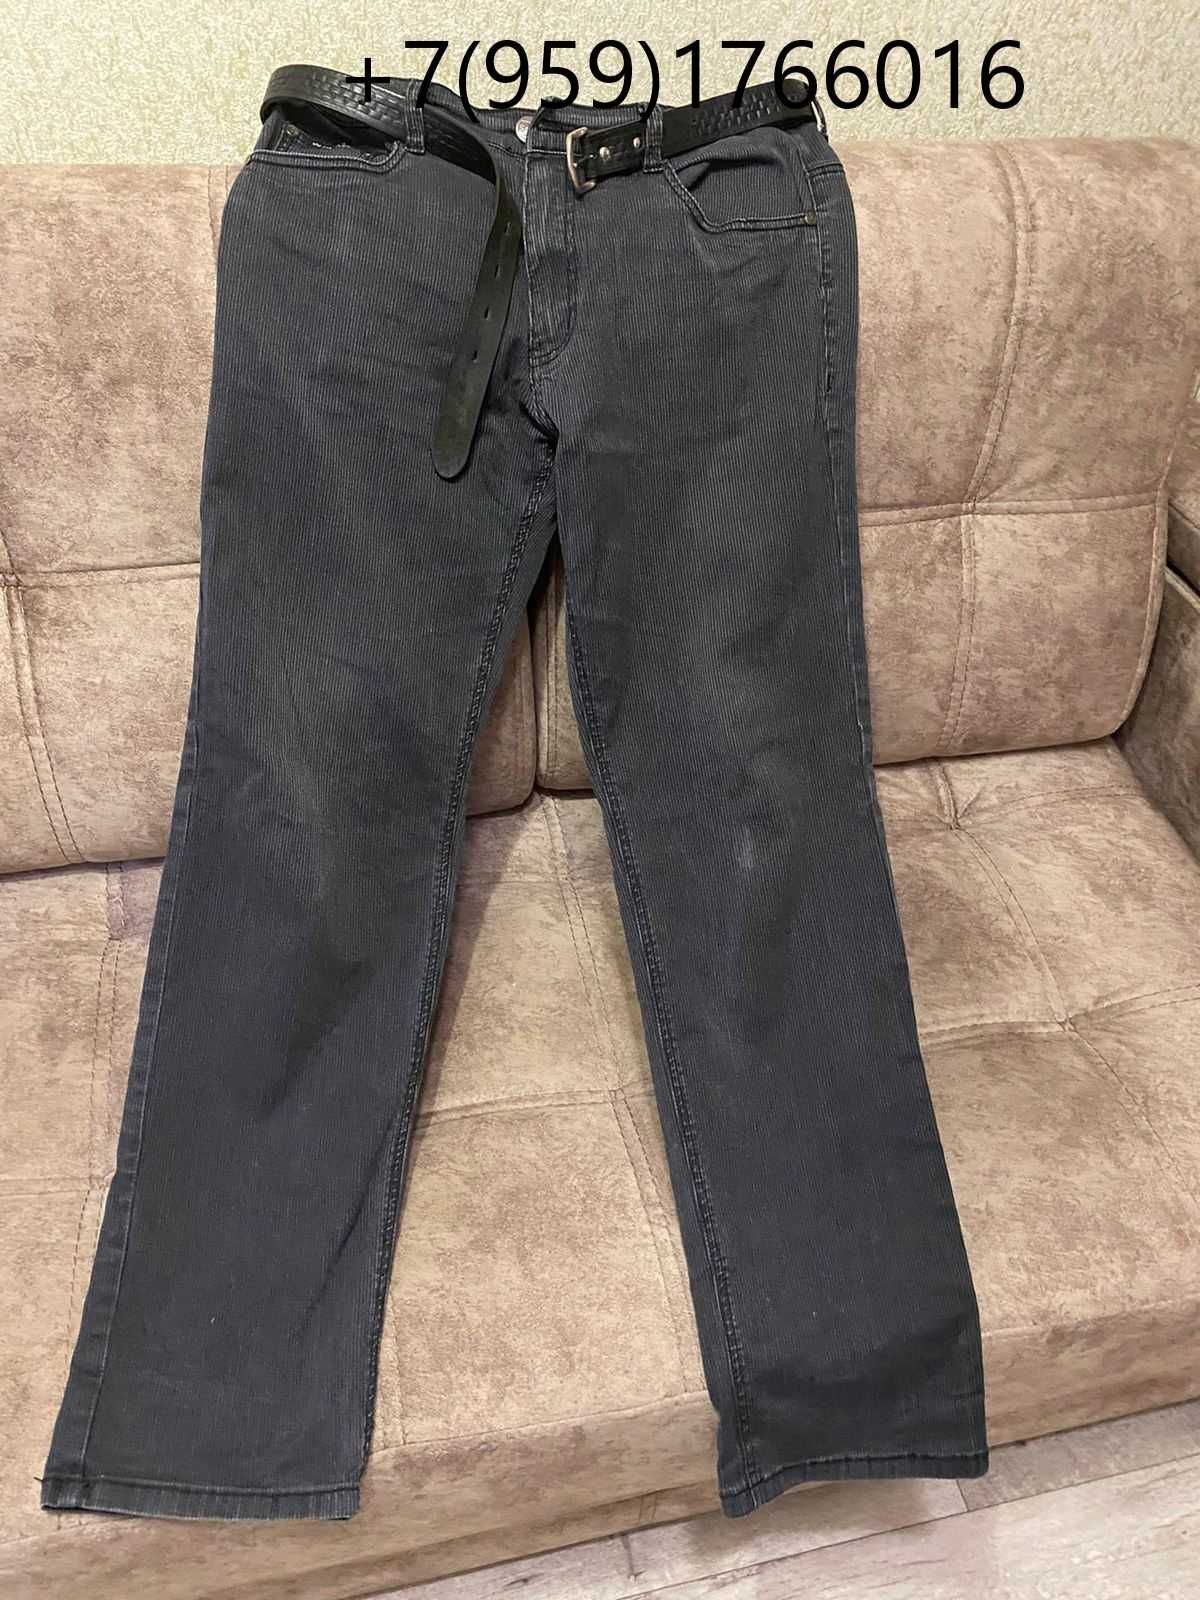 Продам брюки мужские джинсовые материал стрэйч катон